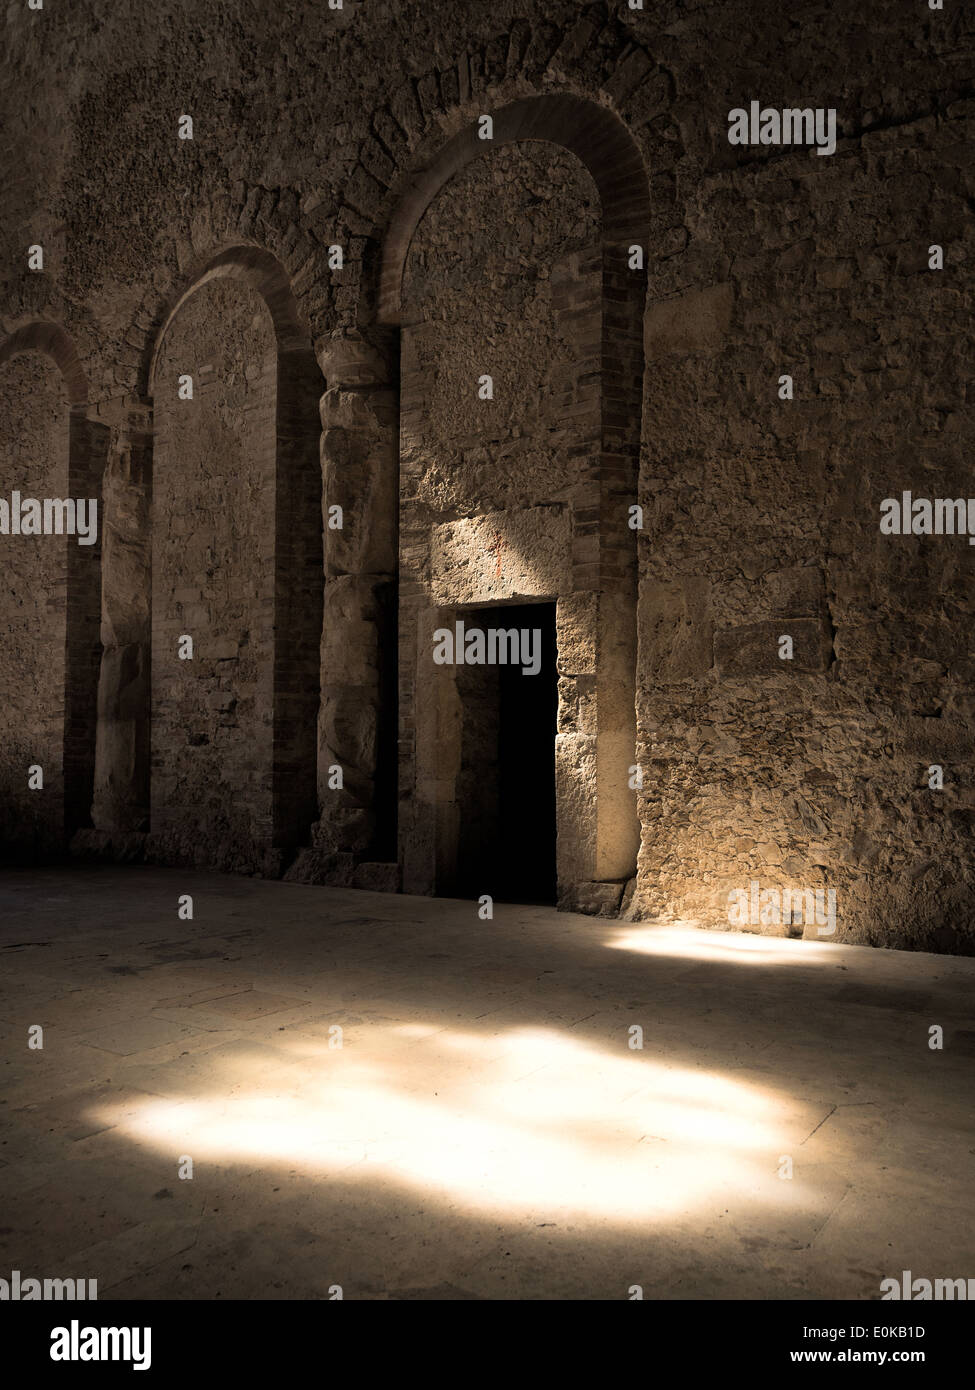 La chiesa romanica di San Salvatore di Spoleto, umbria, Italia; dettaglio delle colonne riempite di cemento in una parete Foto Stock